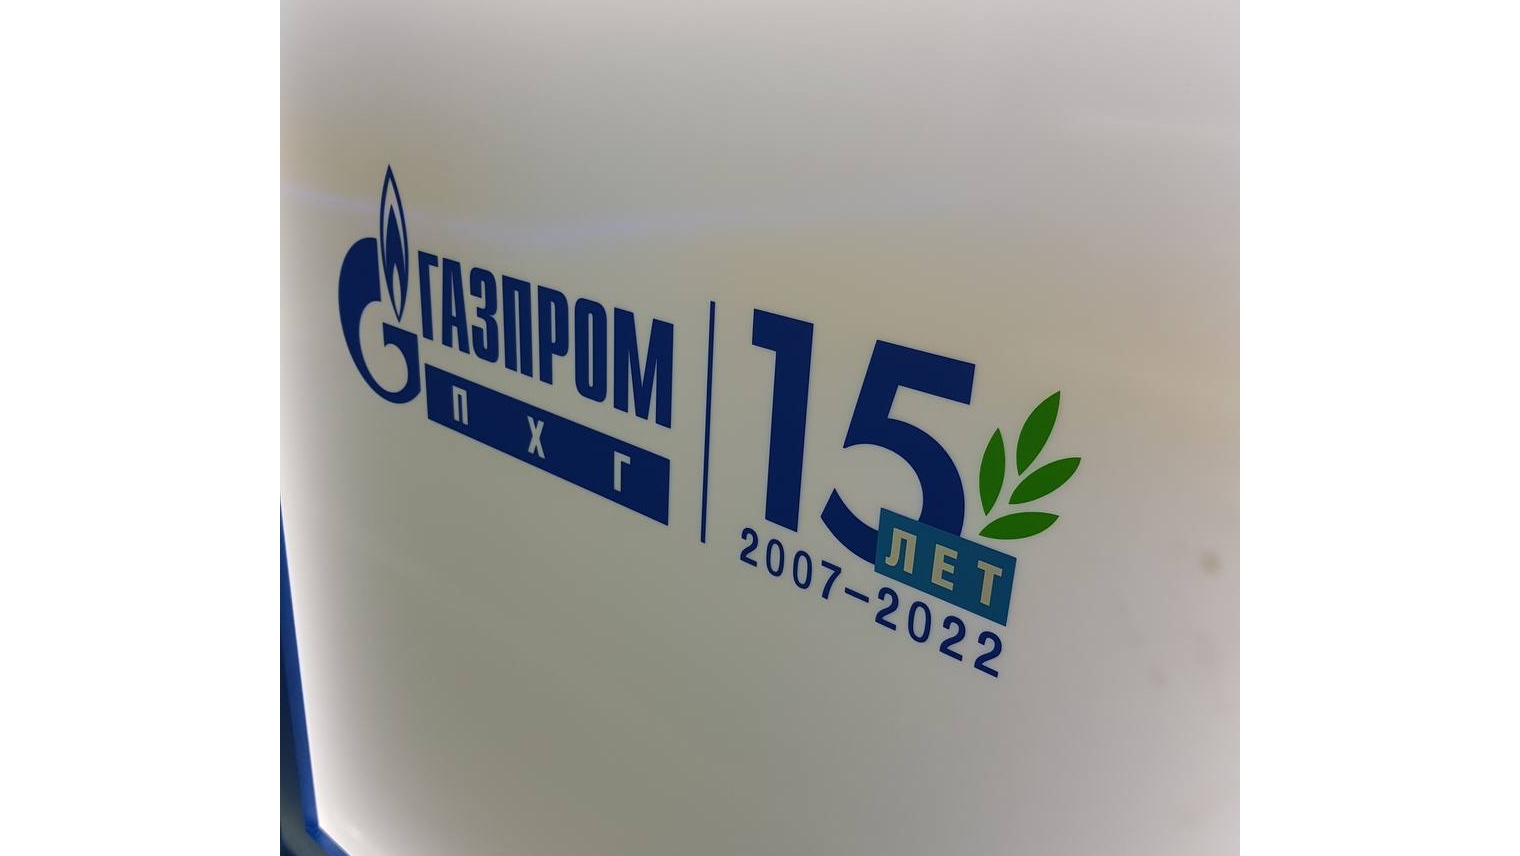 ООО «Газпром ПХГ» обеспечит подземное хранение газа.  Запасы ПХГ в России